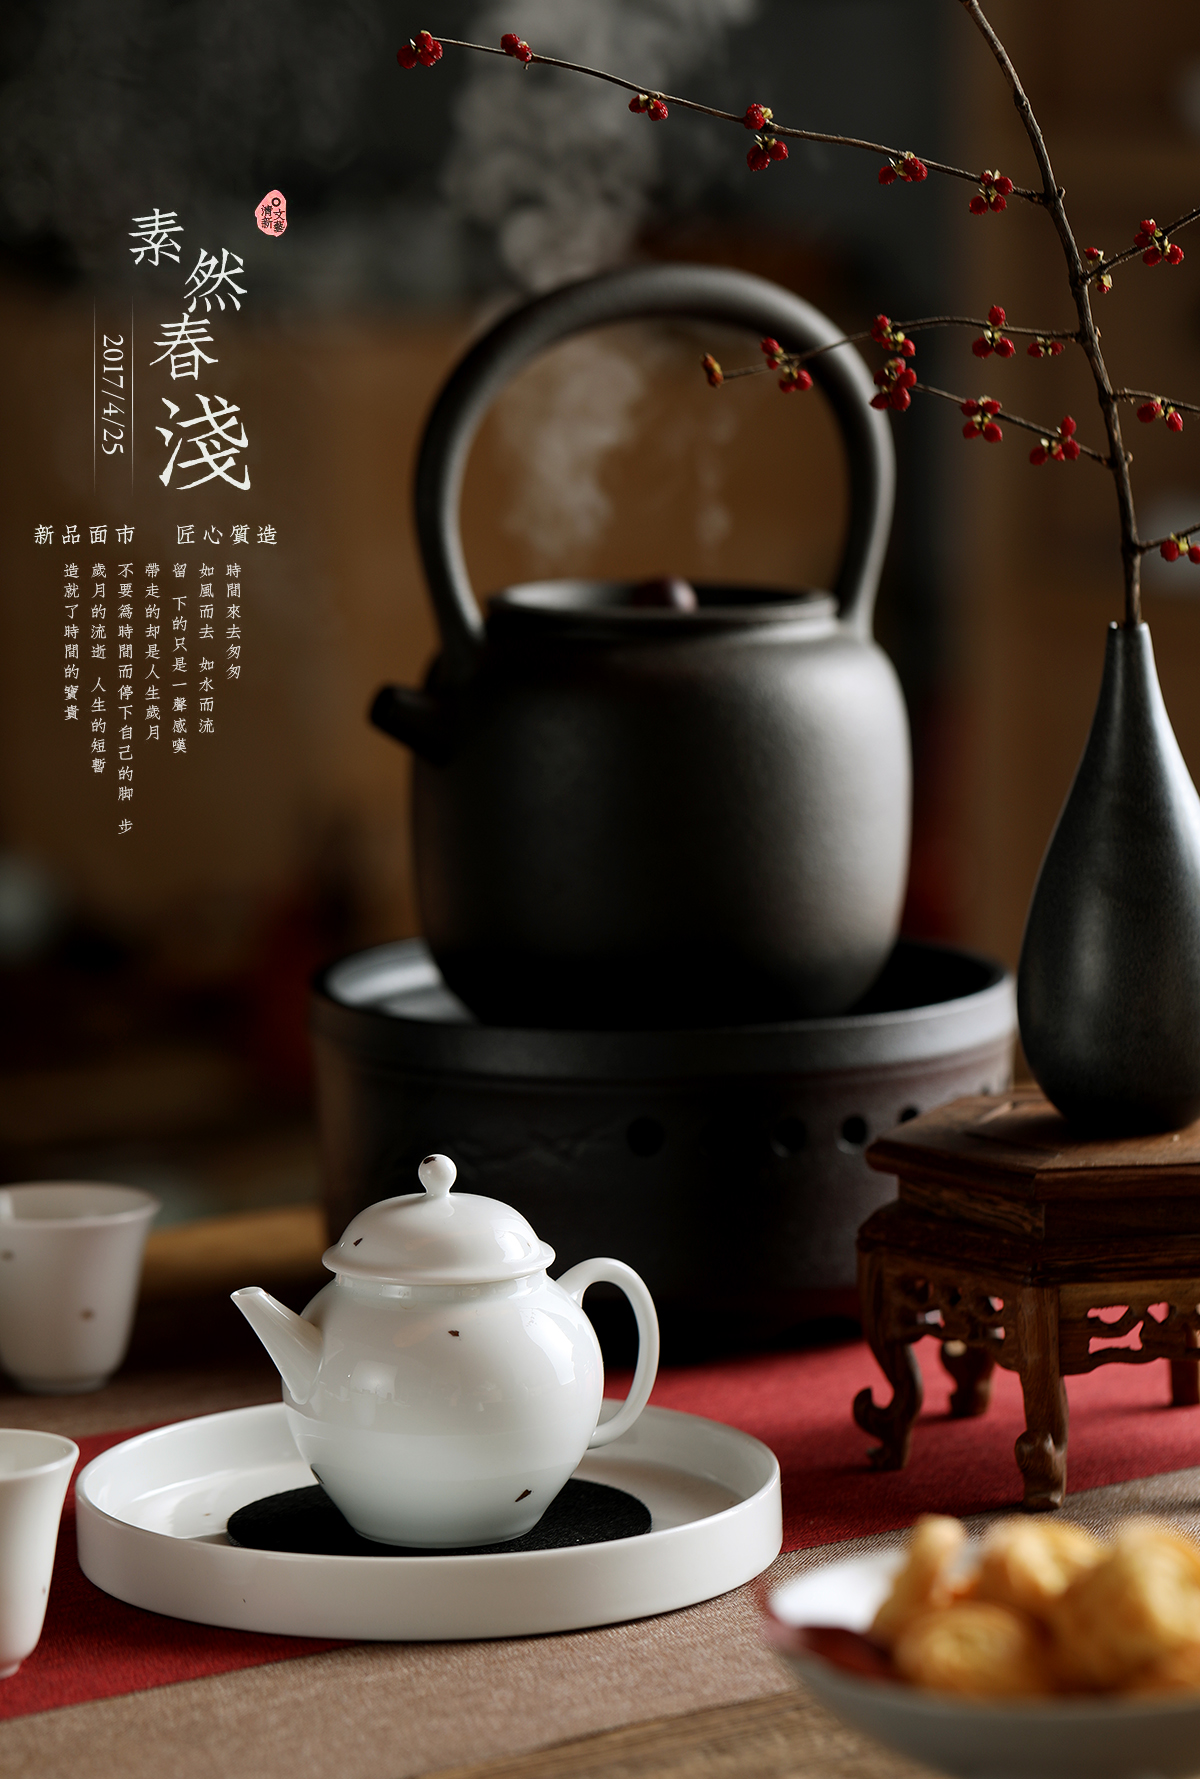 世界杯开户“陶瓷茶具创作展2013””在